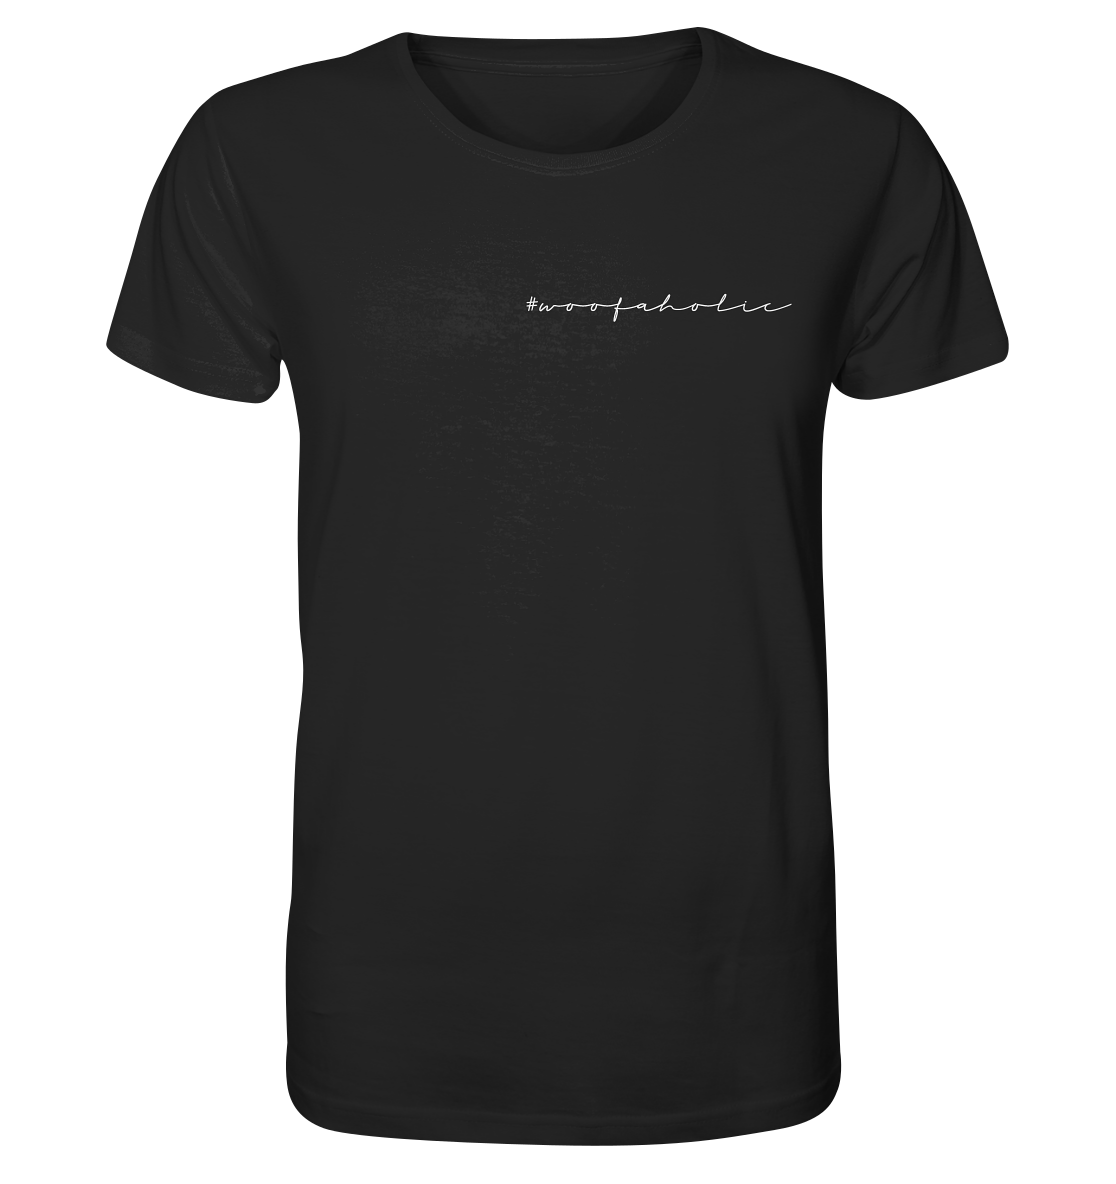 T-Shirt #Woofaholic Dark - Organic